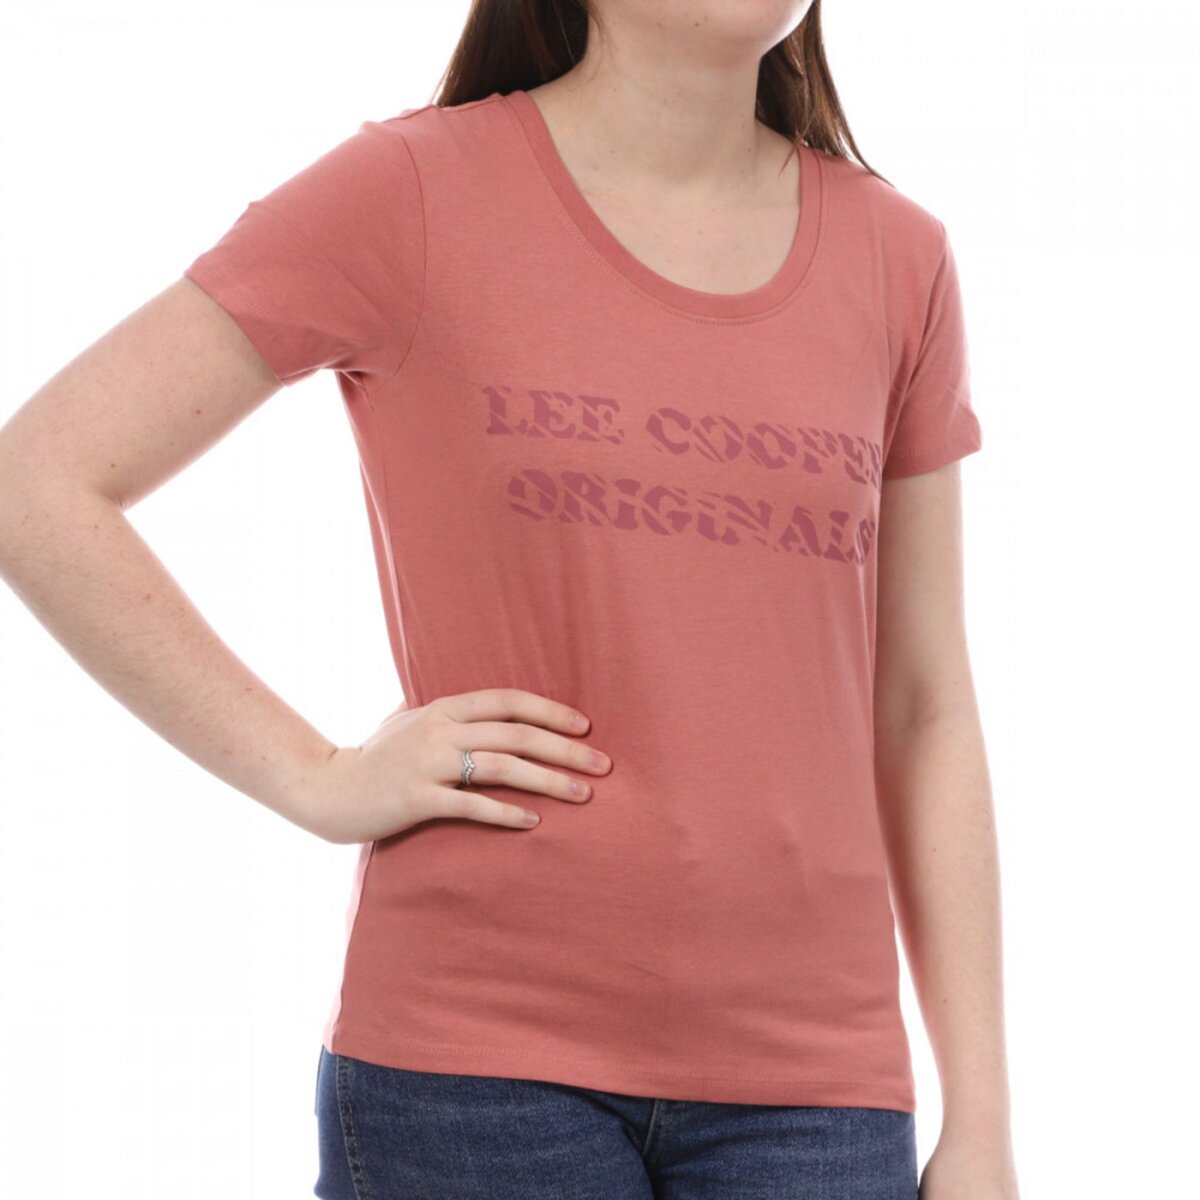 Lee Cooper T-shirt Rose Femme Lee Cooper Ole